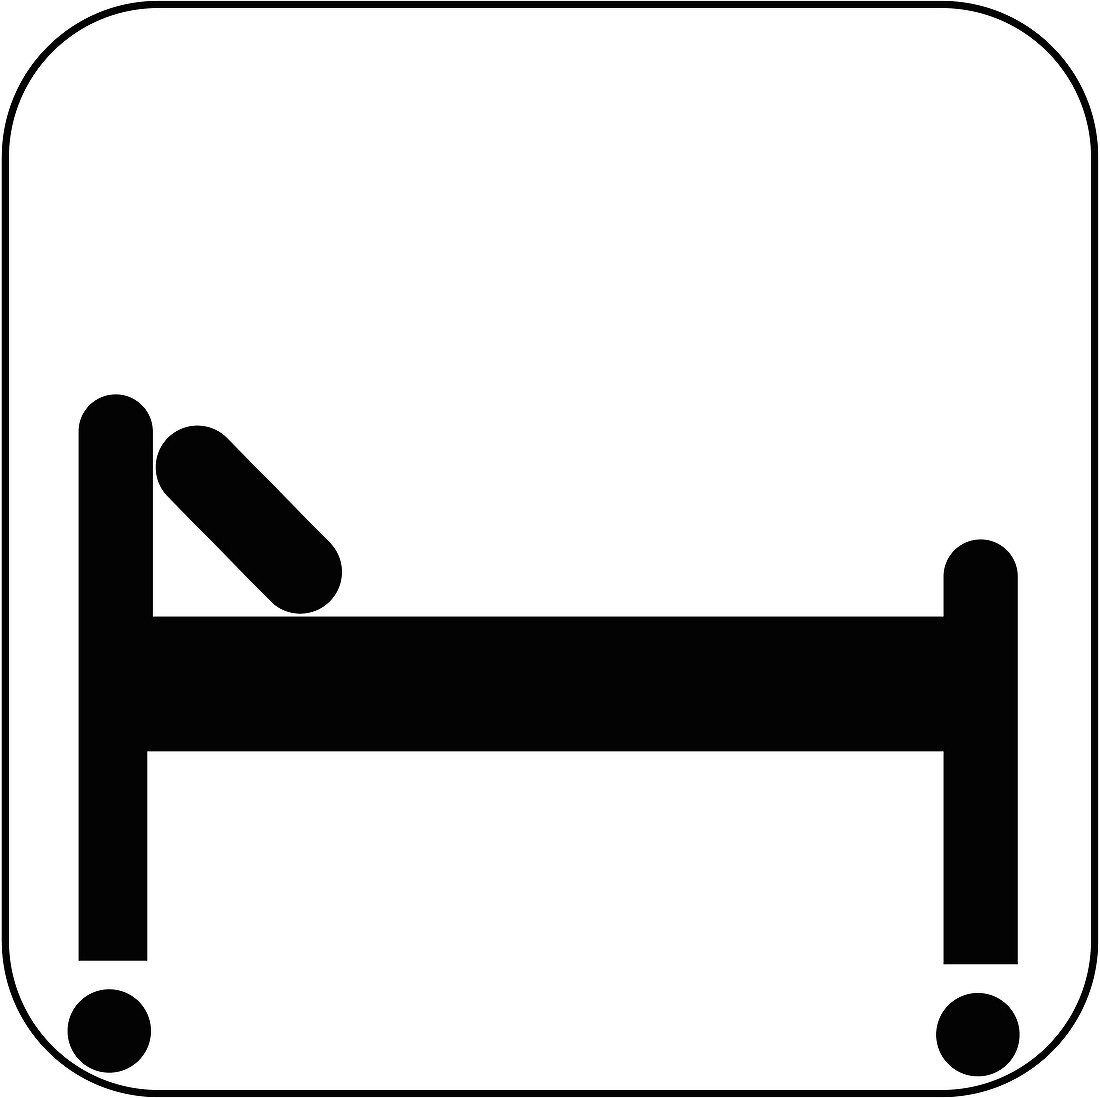 Hospital bed symbol,artwork